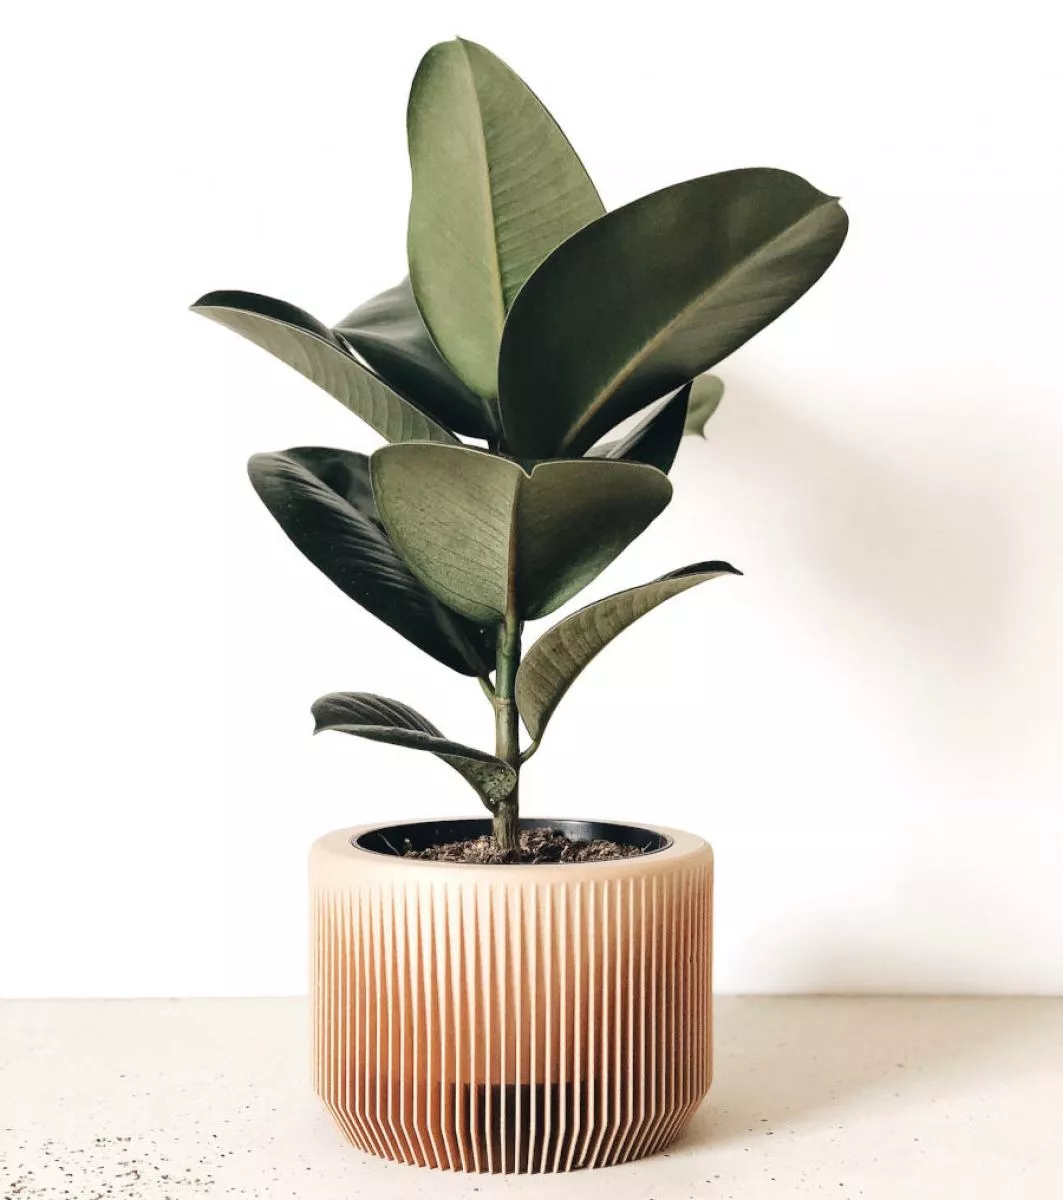 Nachhaltiger Design-Blumentopf mit filigranem Dekor Ø 14 cm